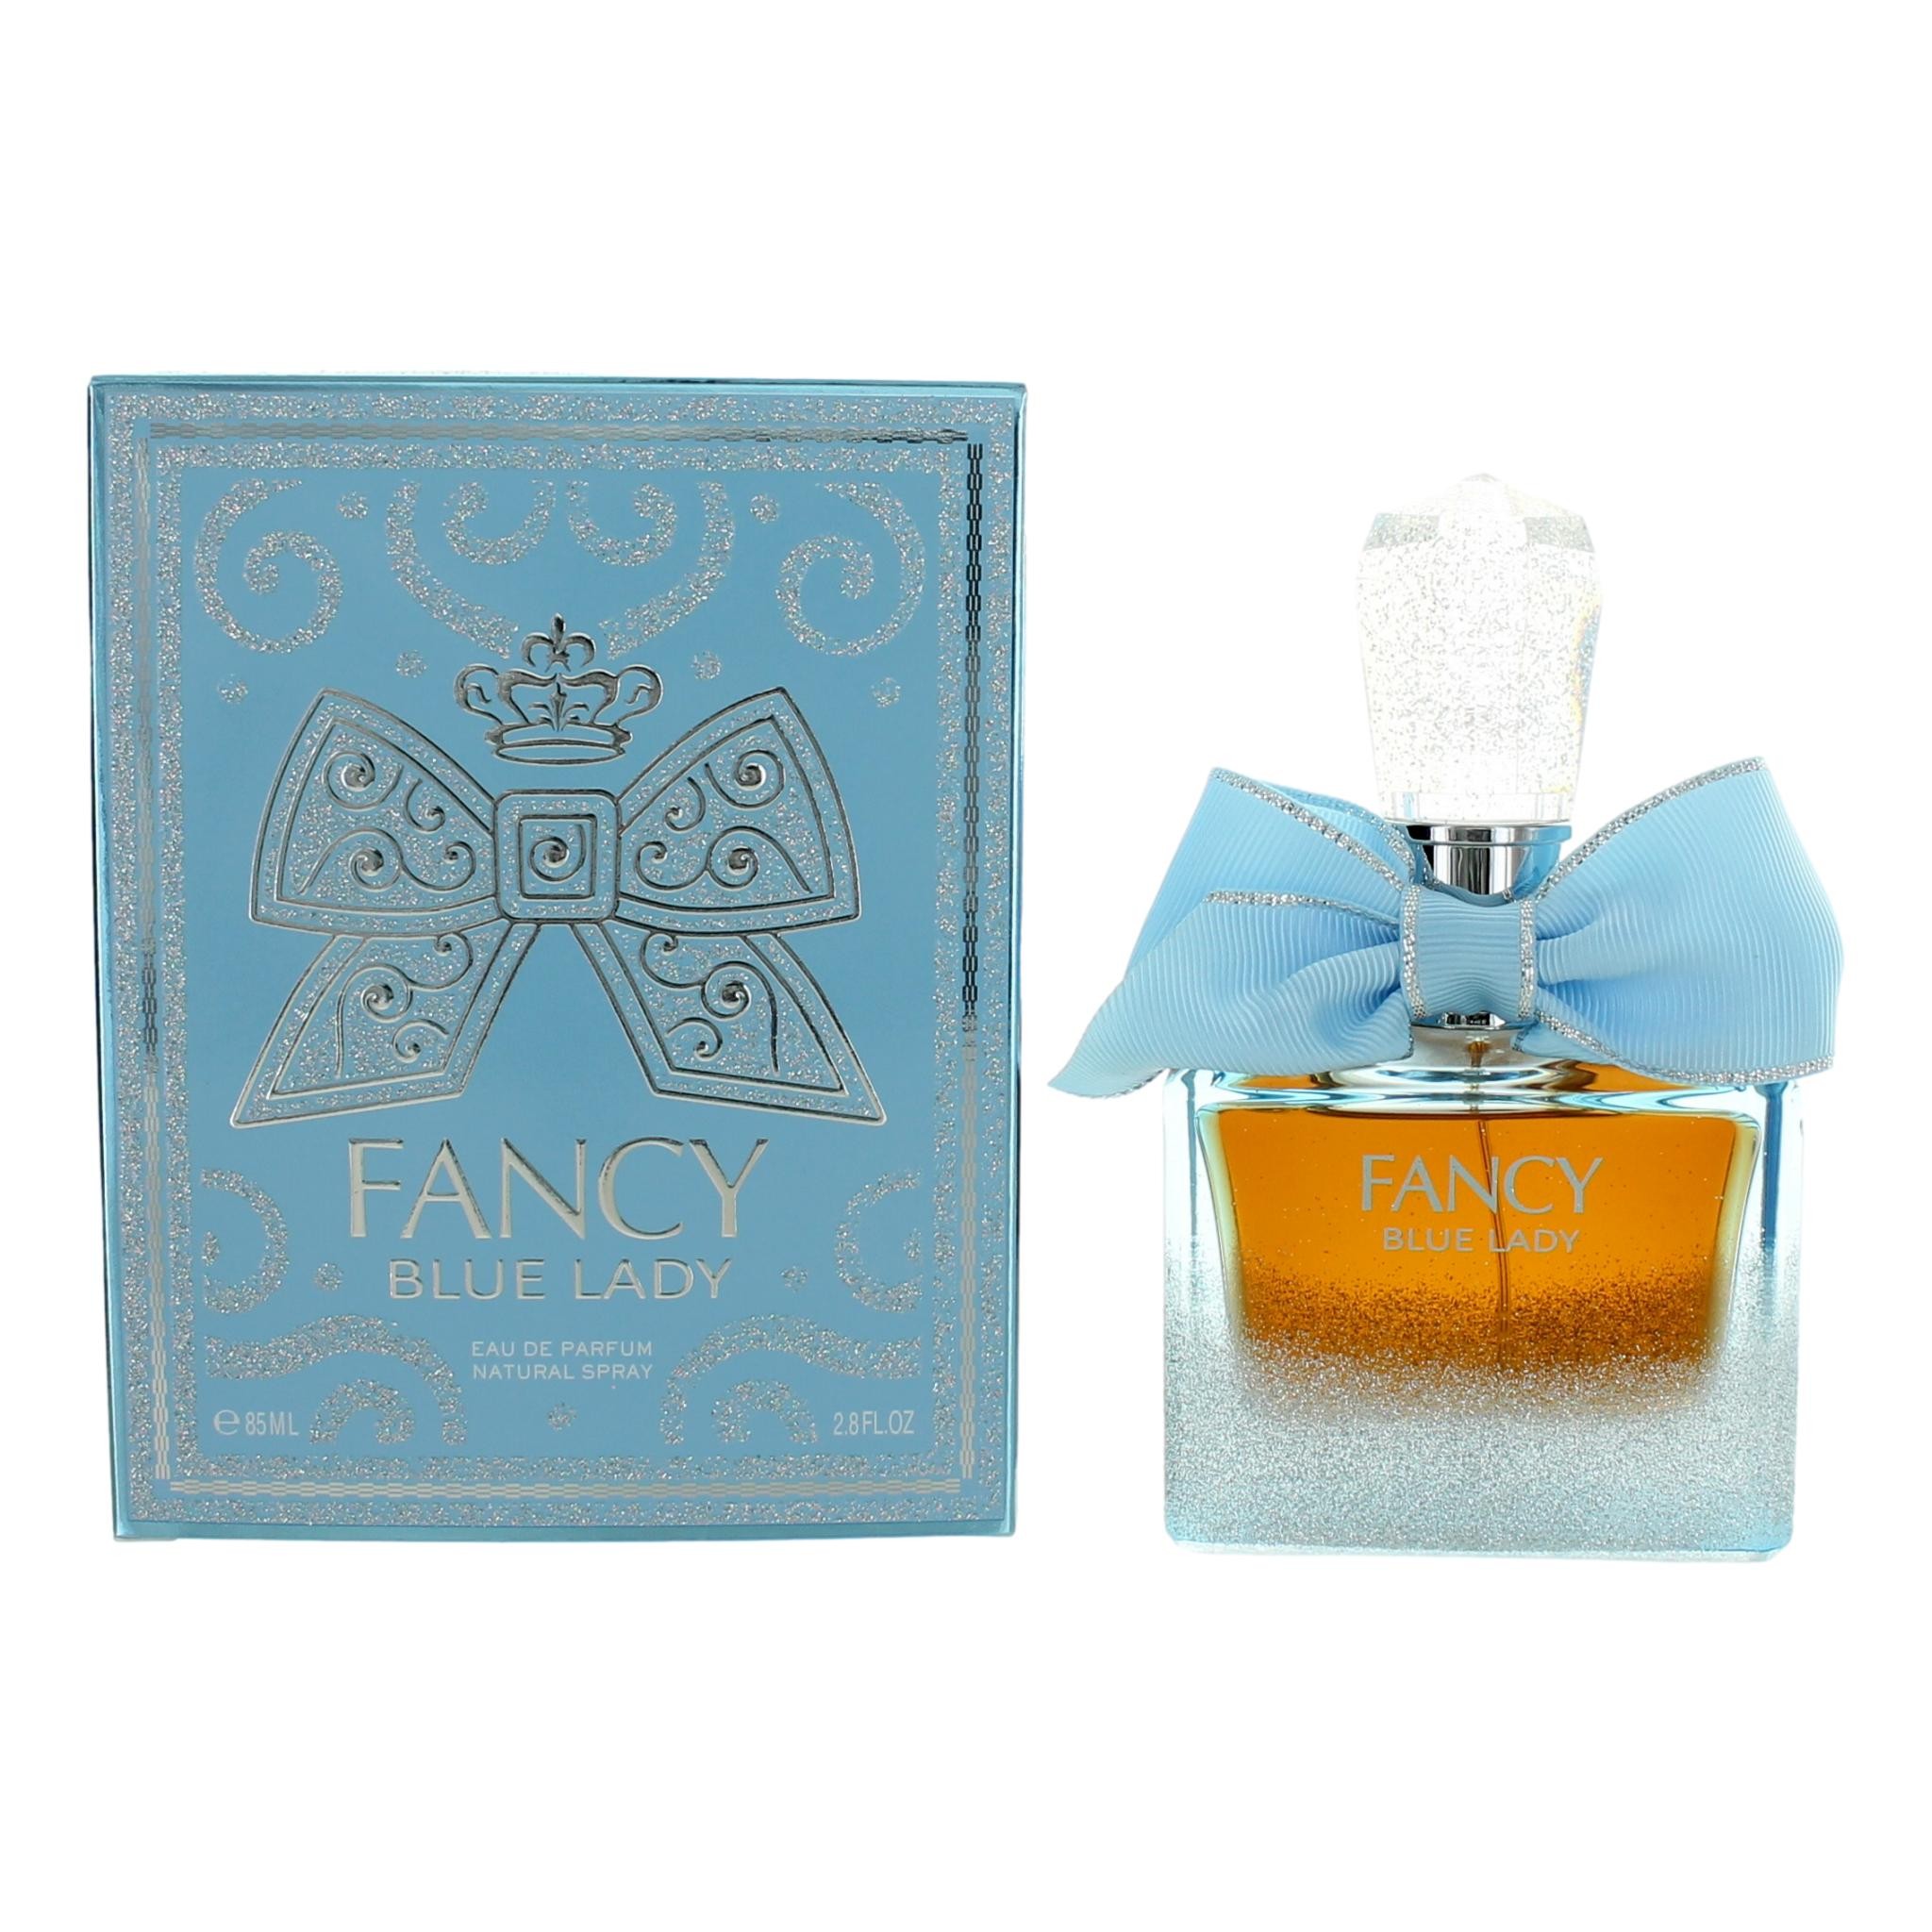 Fancy Blue Lady by Johan. b 2.8 oz Eau De Parfum Spray for Women